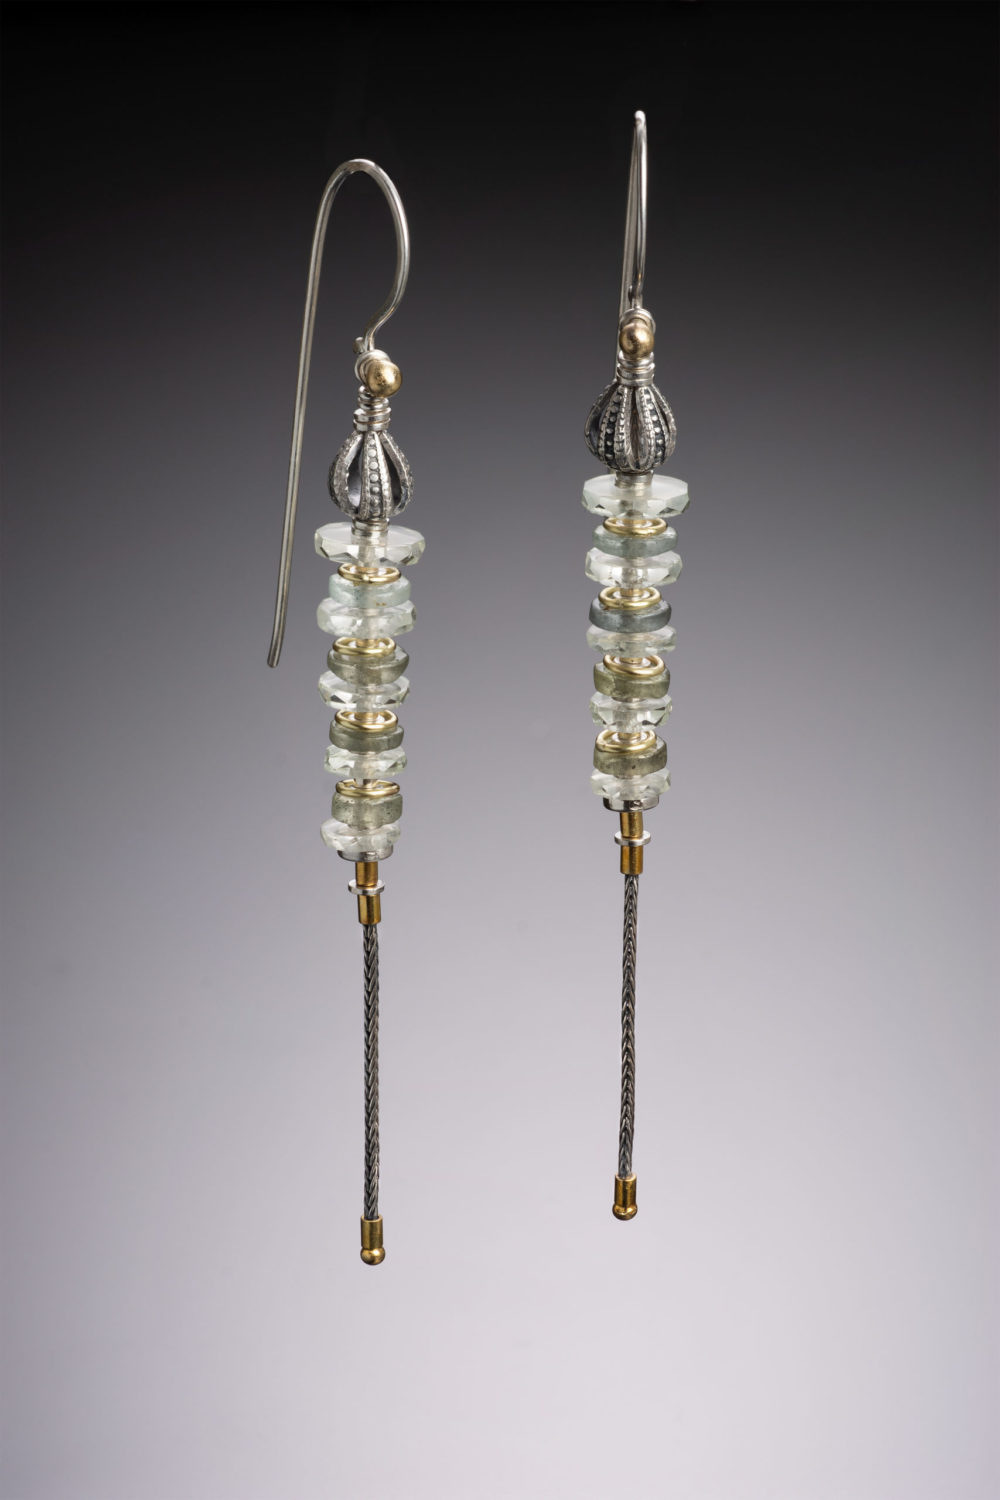 NISA Jewelry, prasiolite earrings